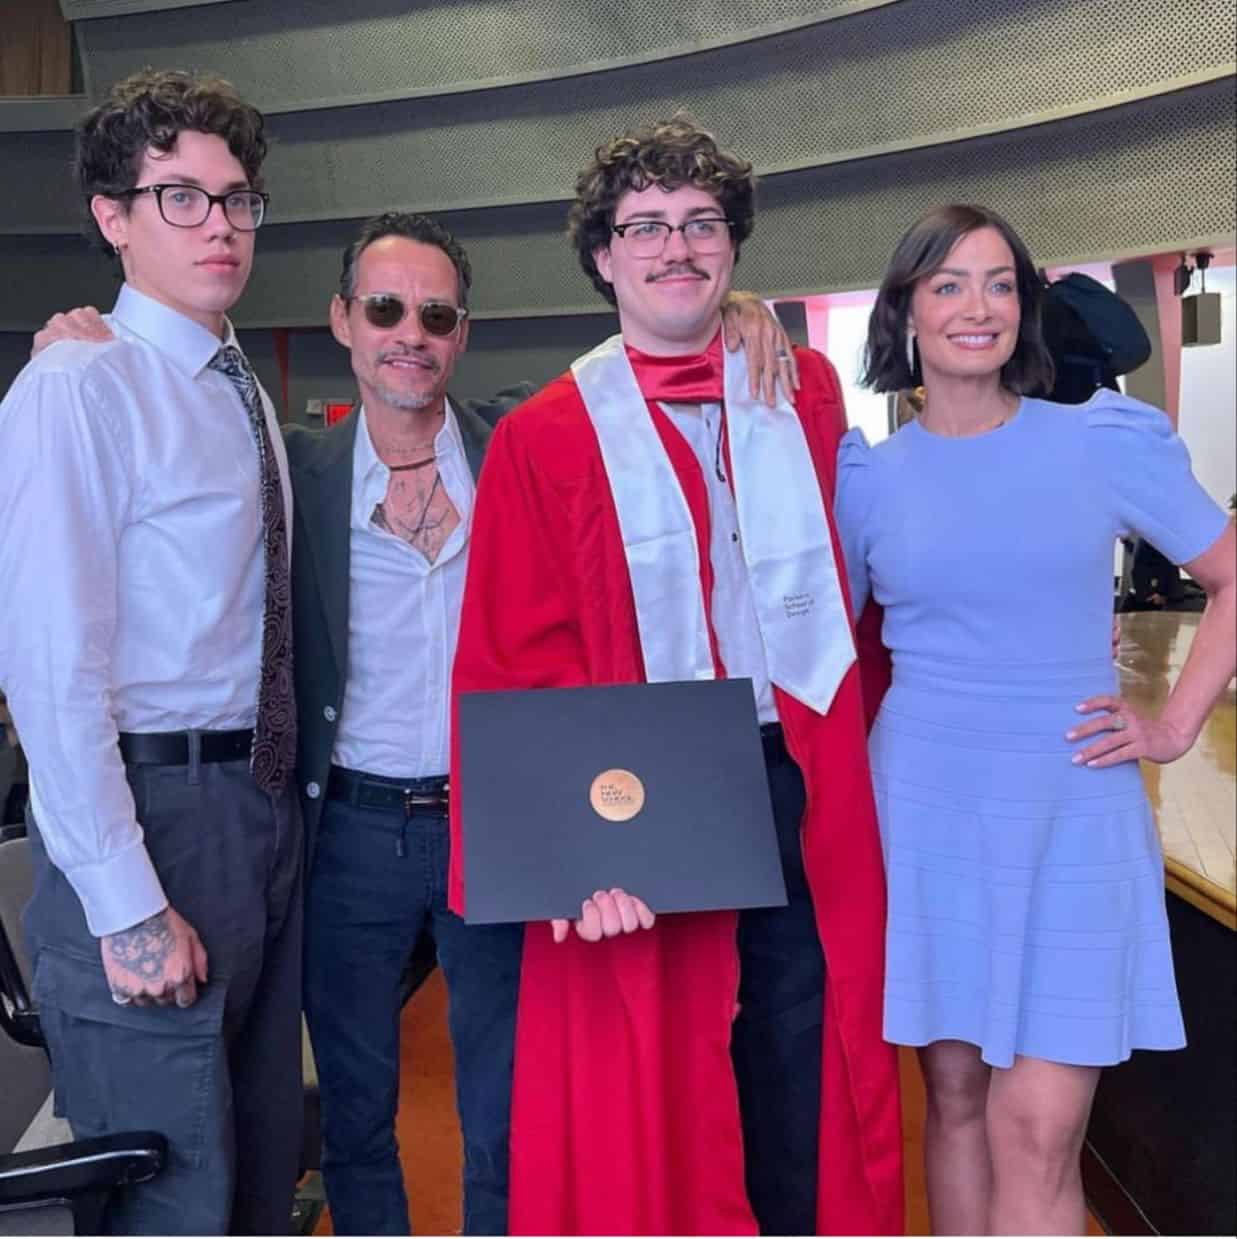 Dayanara Torres y Marc Anthony celebran graduación de su hijo mayor Christian